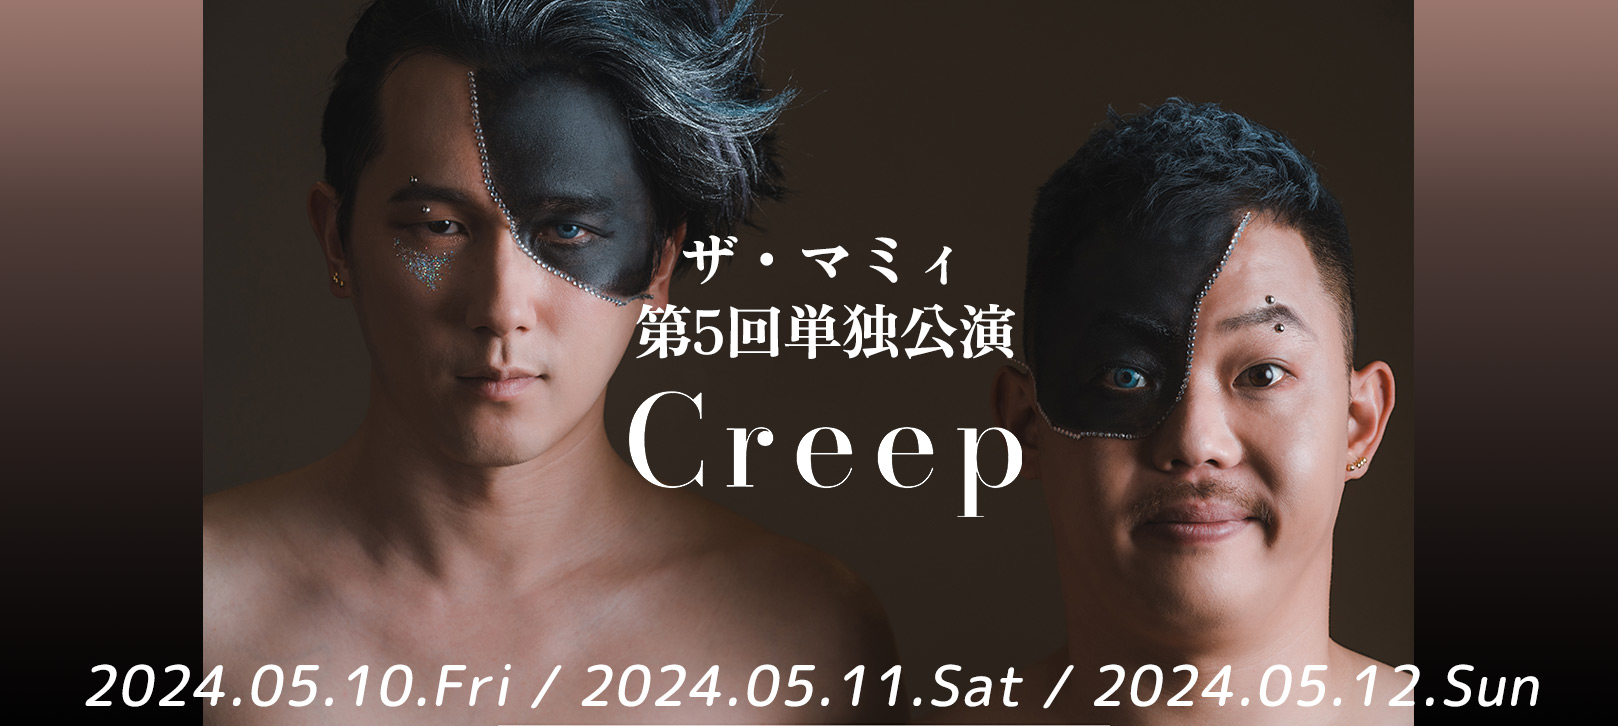 ザ・マミィ第5回単独公演「Creep」2024.05.10.Fri / 2024.05.11.Sat / 2024.05.12.Sun